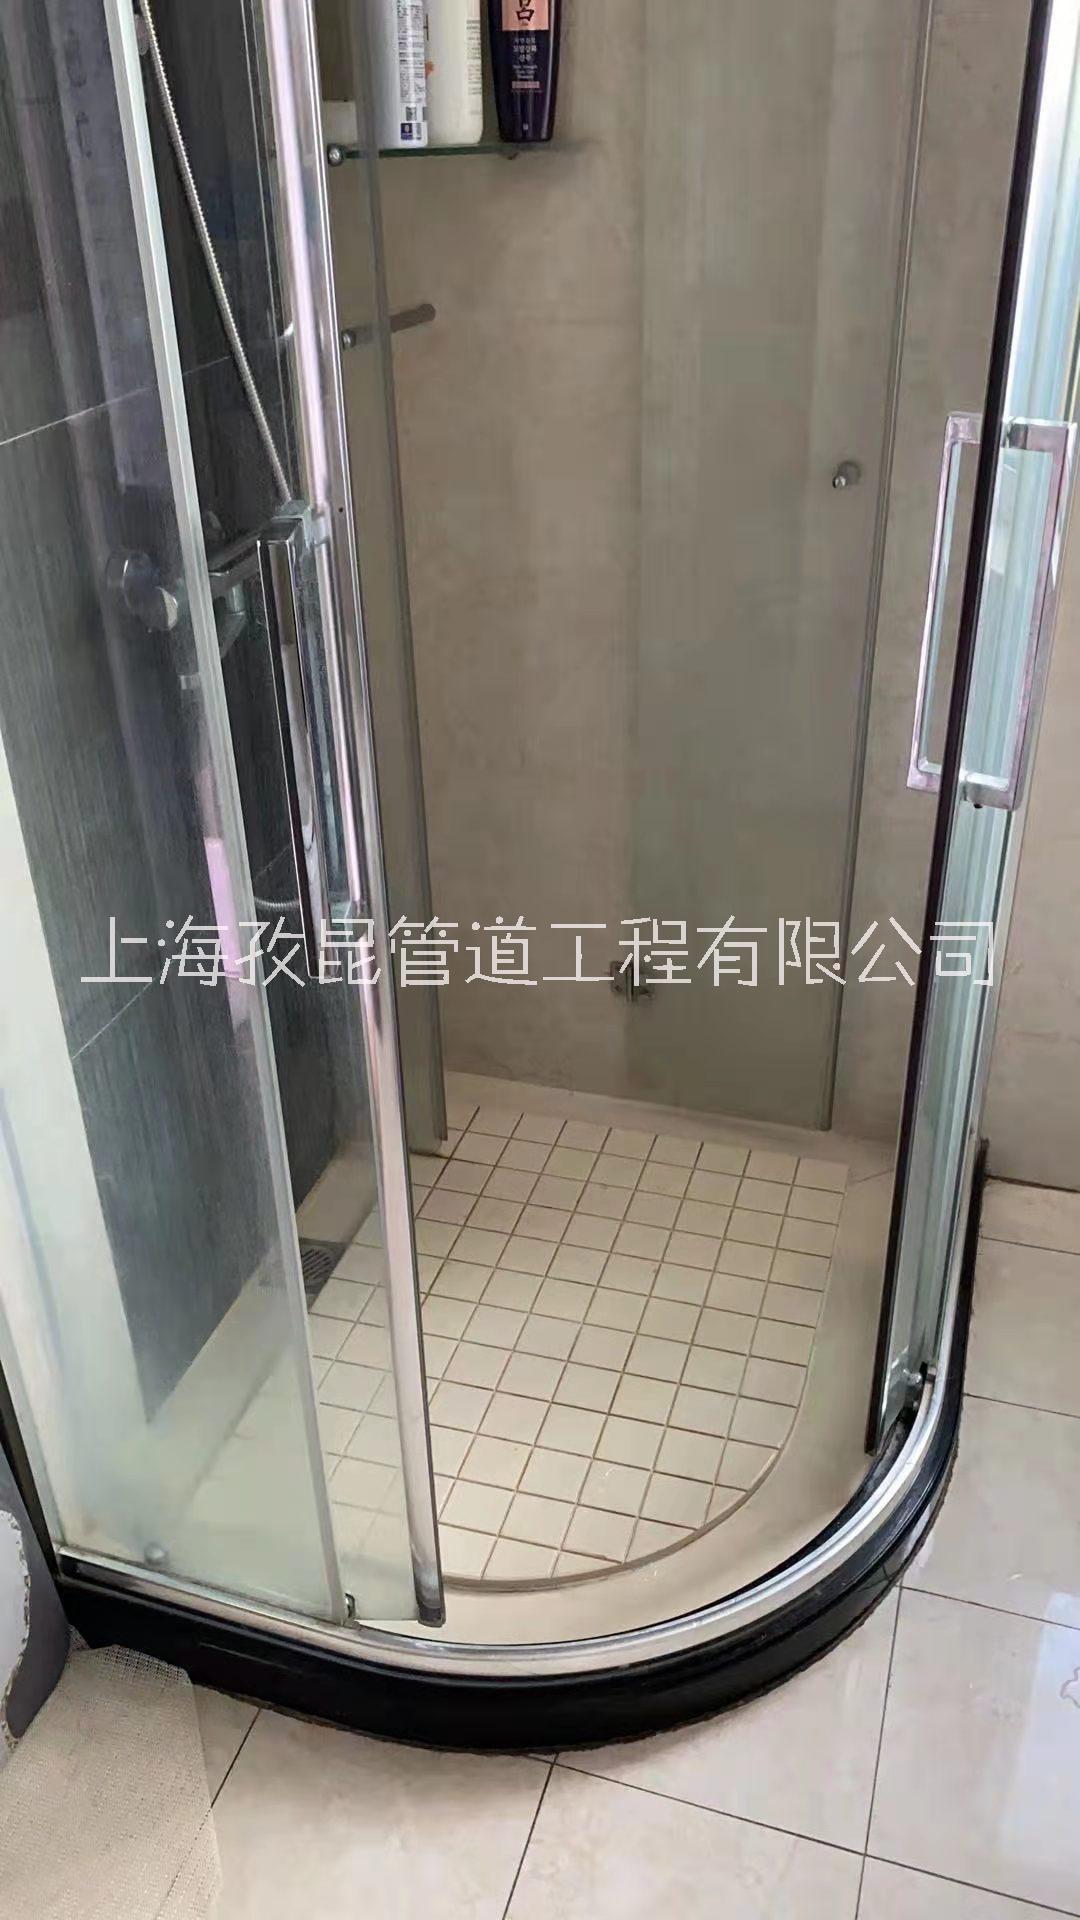 上海福瑞淋浴房维修移门下沉 静安区维修淋浴房图片